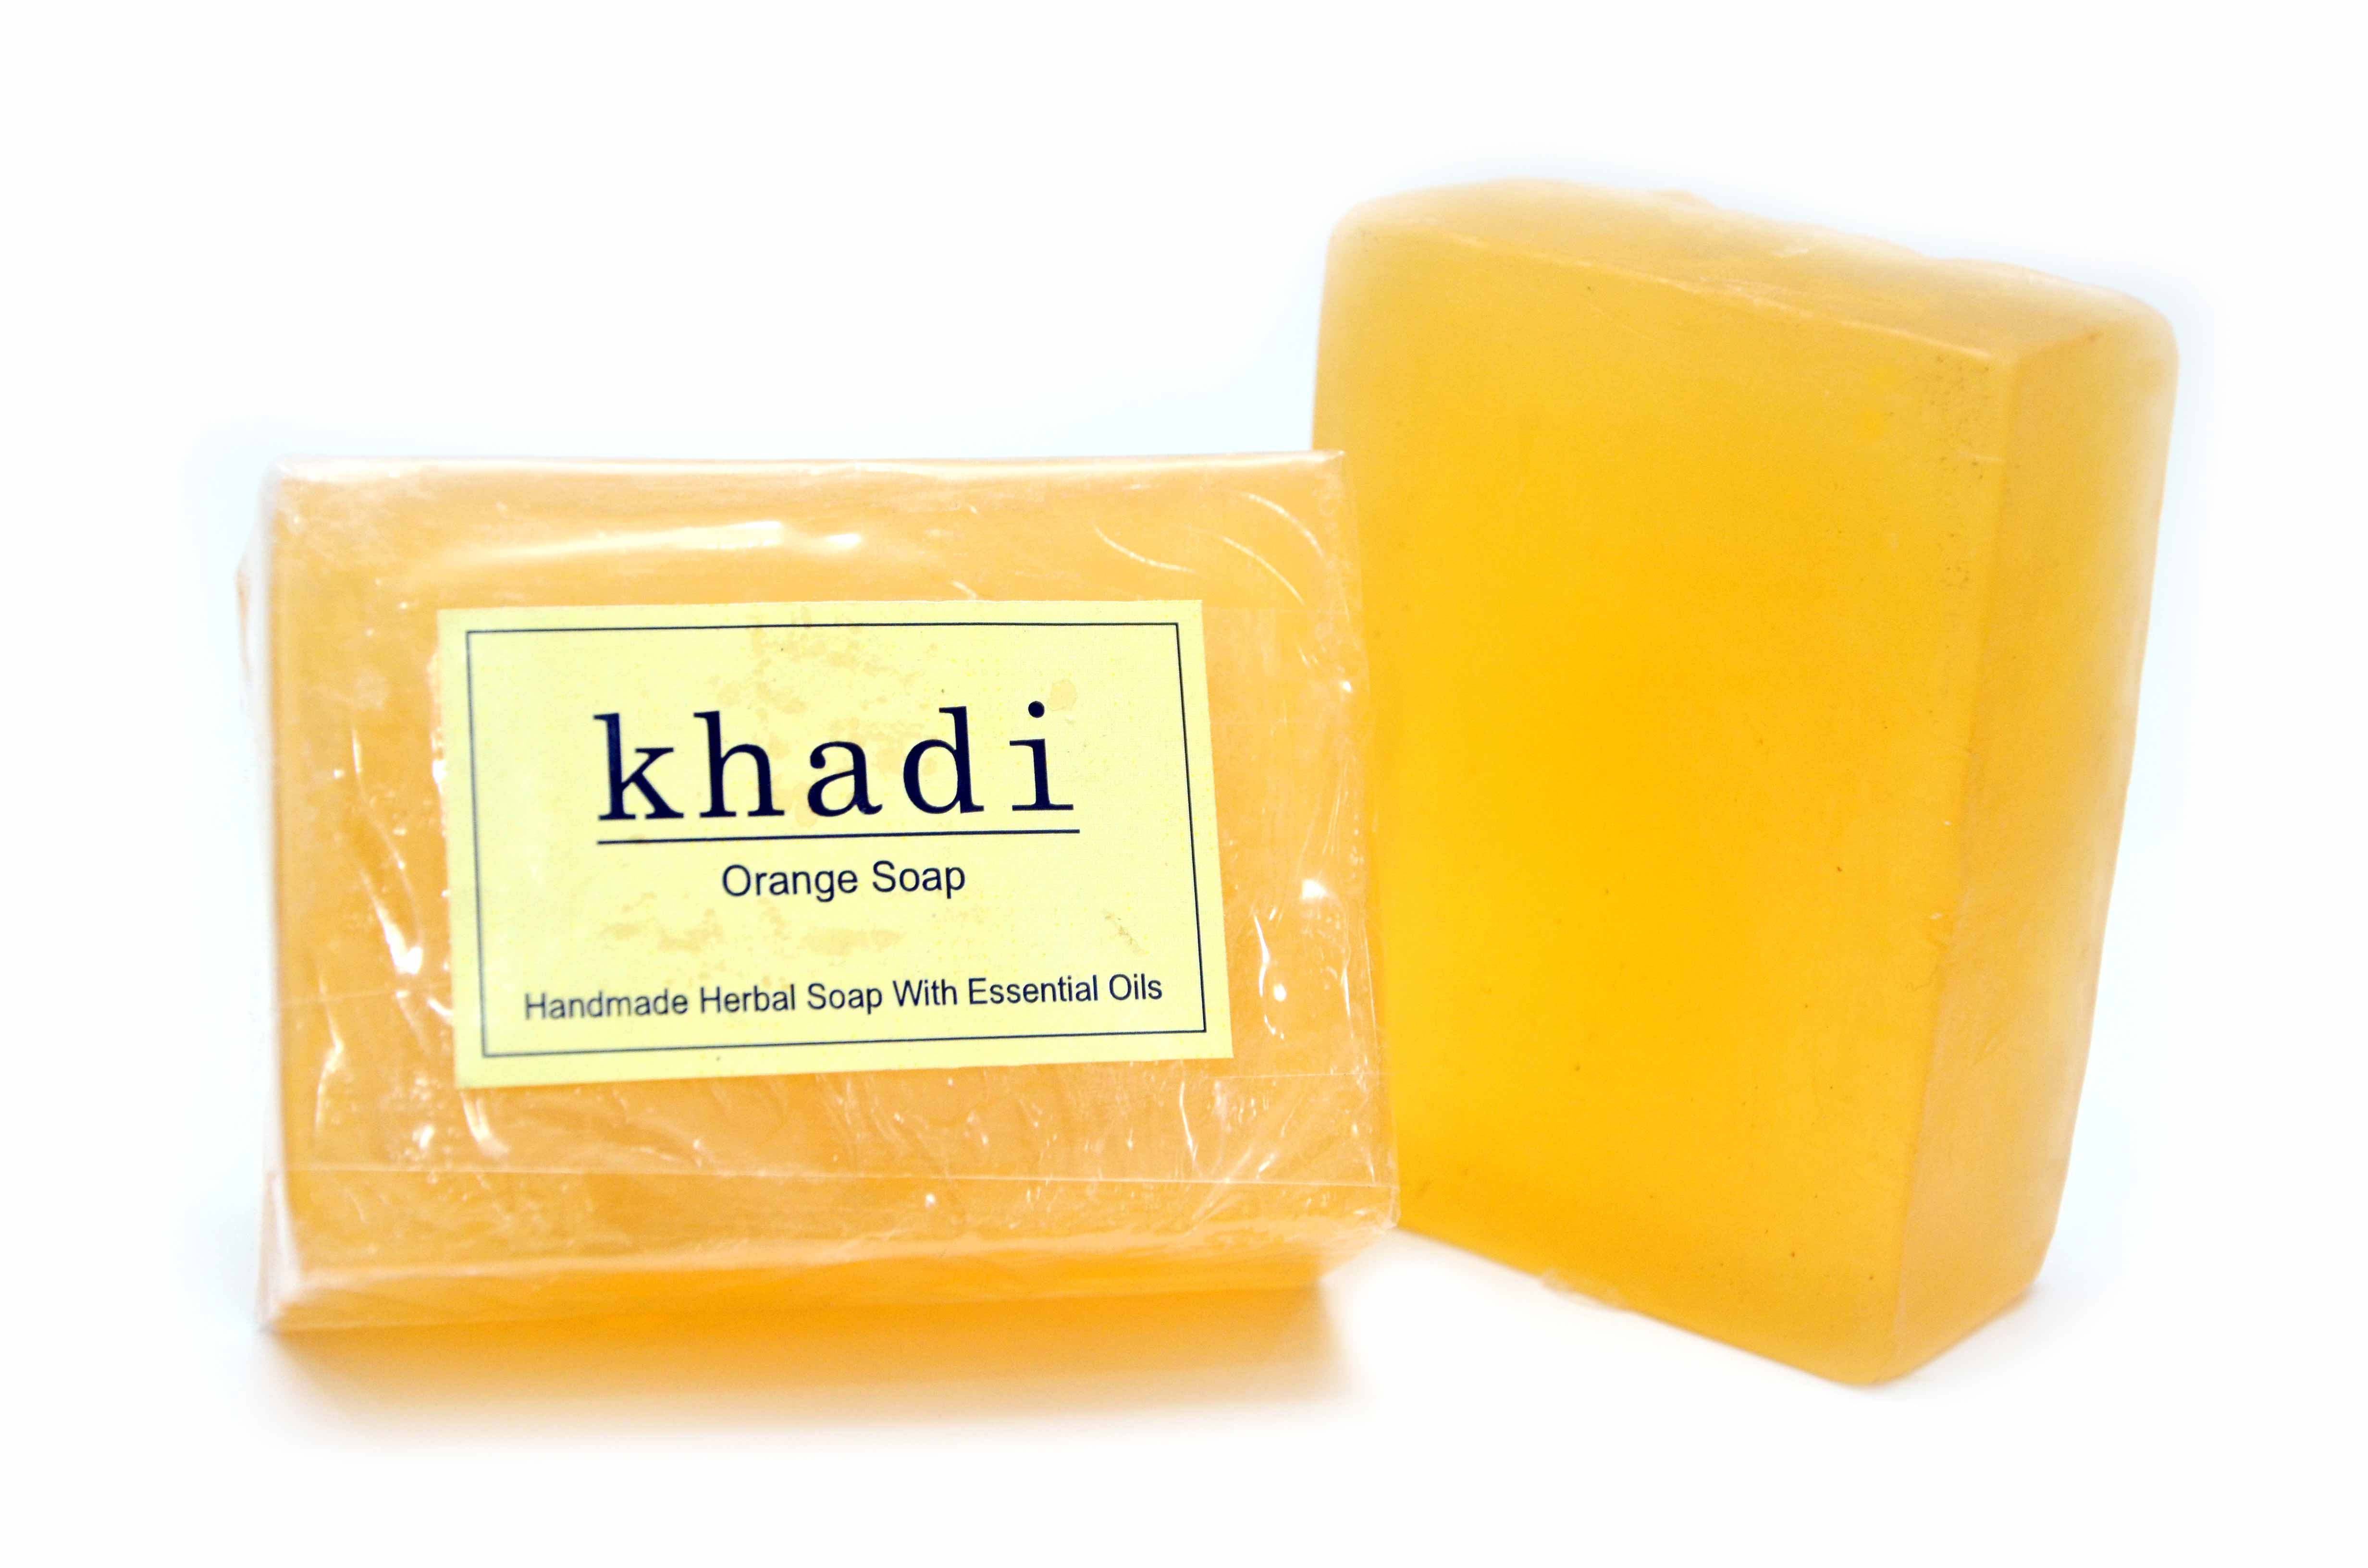 Vagad's Khadi Orange Soap